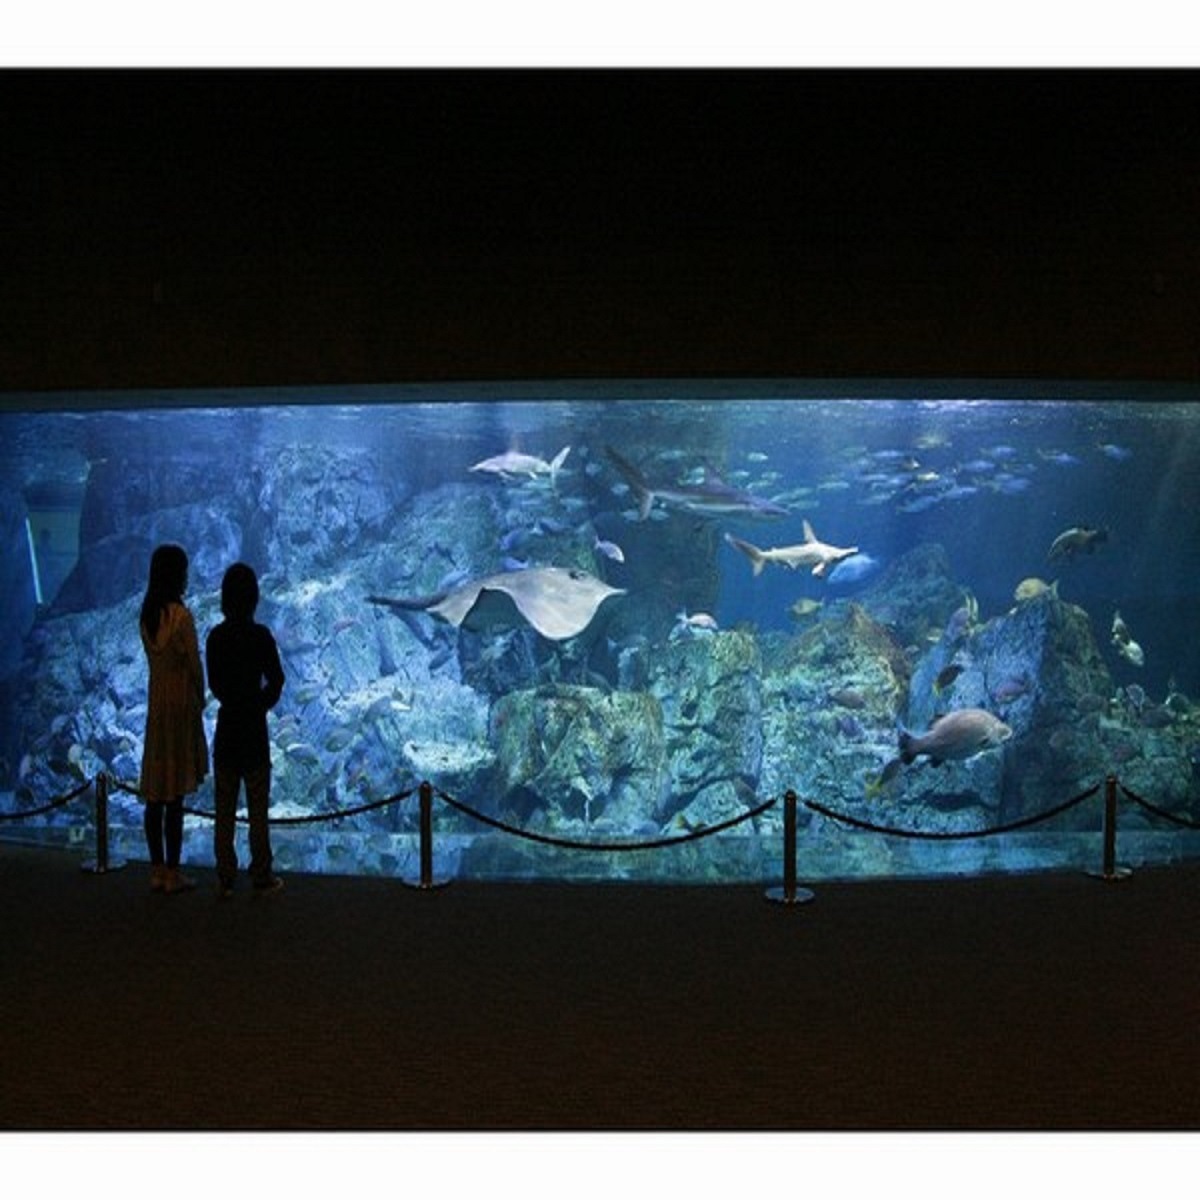 アクティビティ：うみたまご「大回遊水槽」は約90種類、1500尾の魚たちが泳いでいます